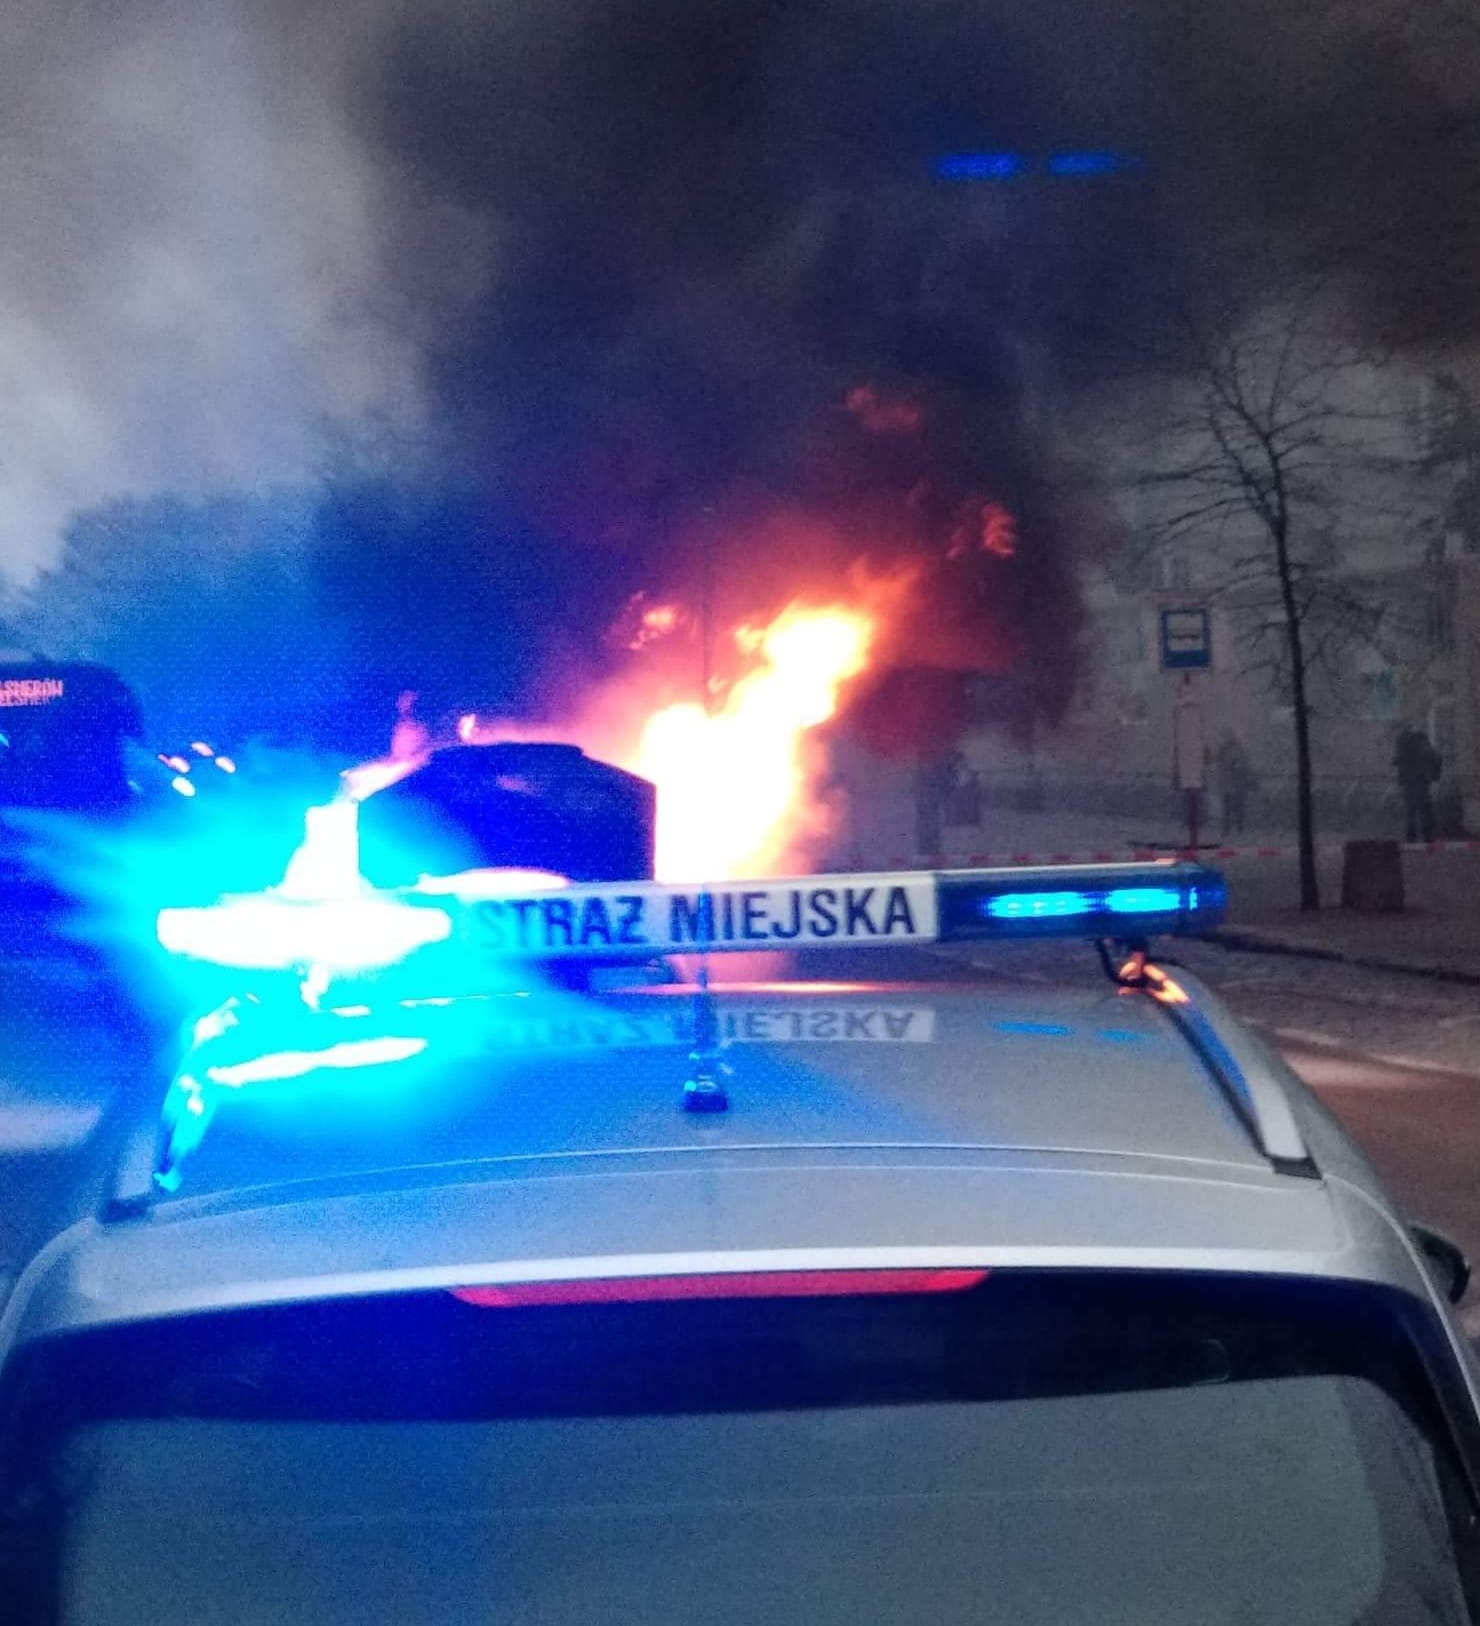 Zdjęcie ilustracyjne: radiowóz straży miejskiej z włączonymi światłąmi sygnalizacyjnymi. Za nim widoczne płomienie i kłęby dymu z płonącego samochodu.